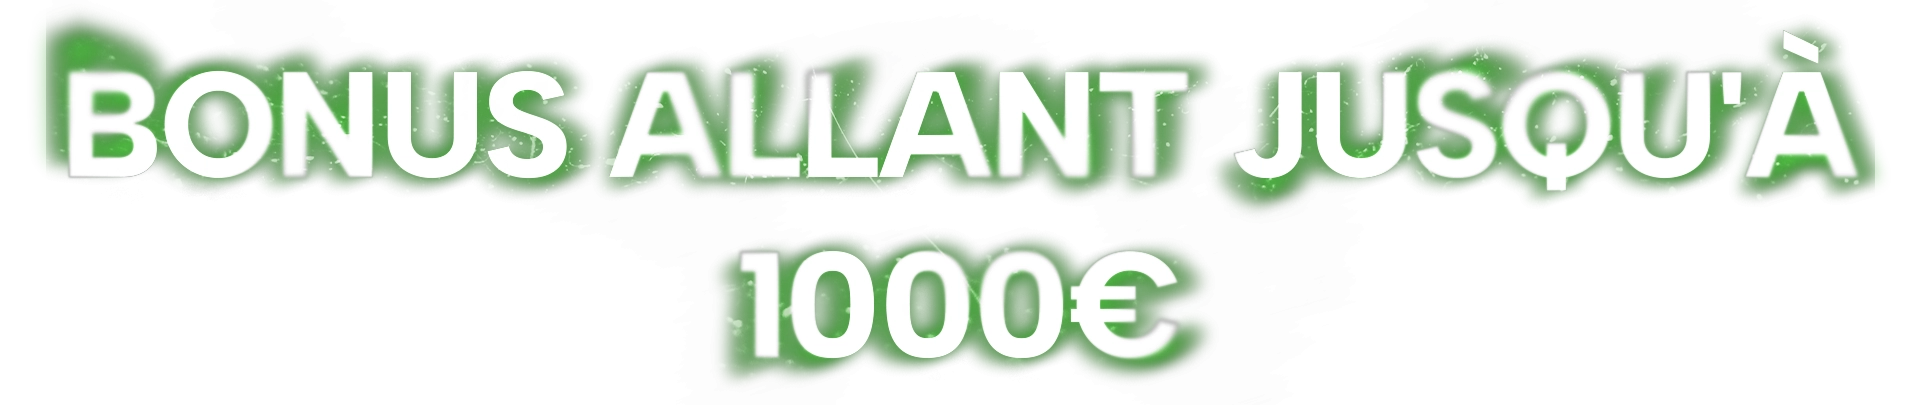 Mrxbet-Bonus-Allant-Jusqu-a-1000-Euros